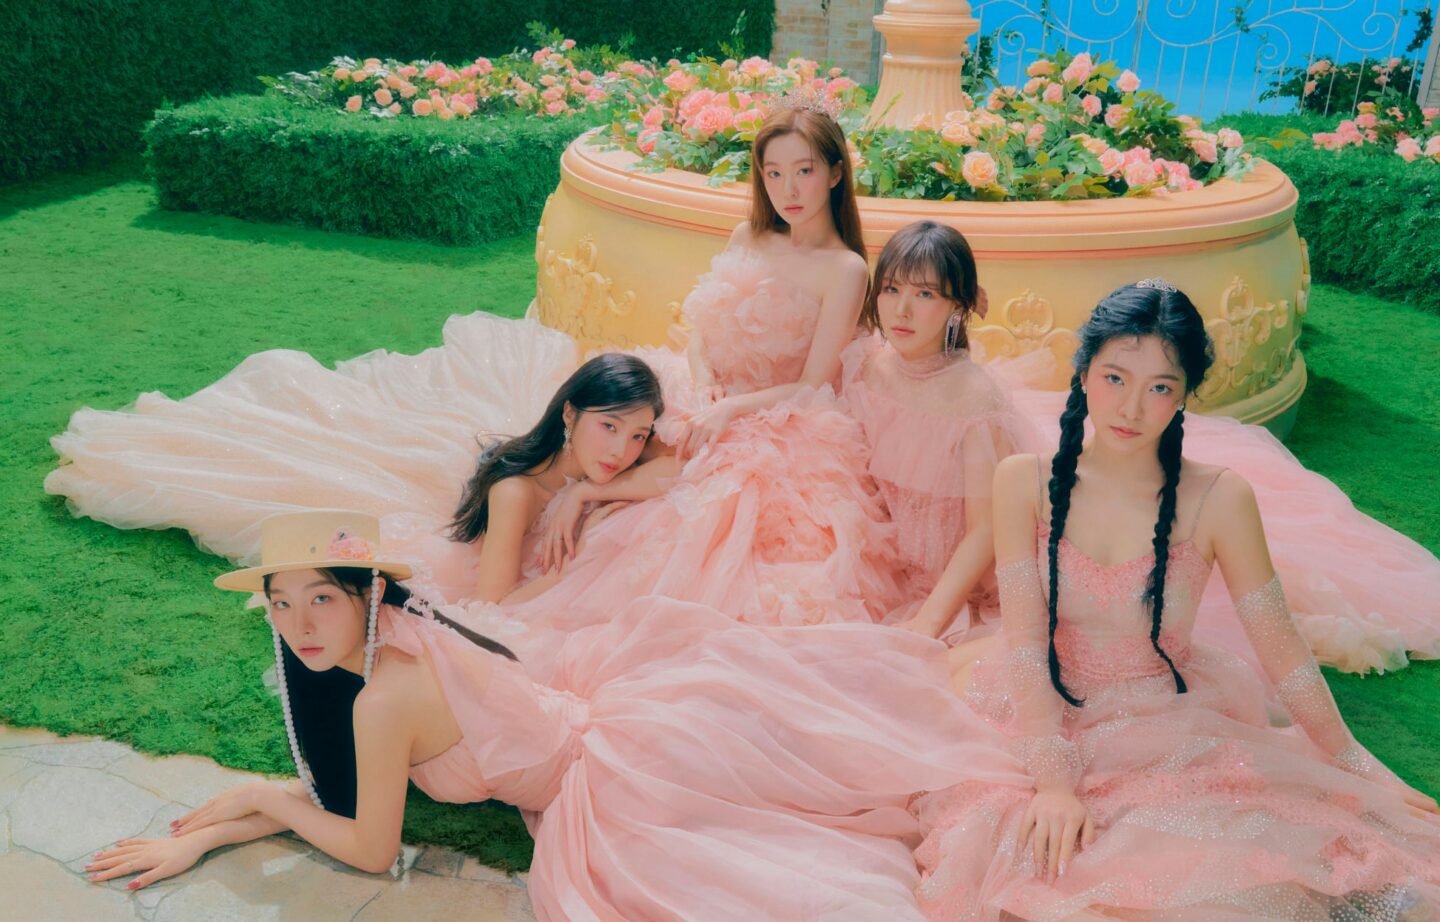 Red Velvet Burst into Bloom with “The ReVe Festival 2022 – Feel My 